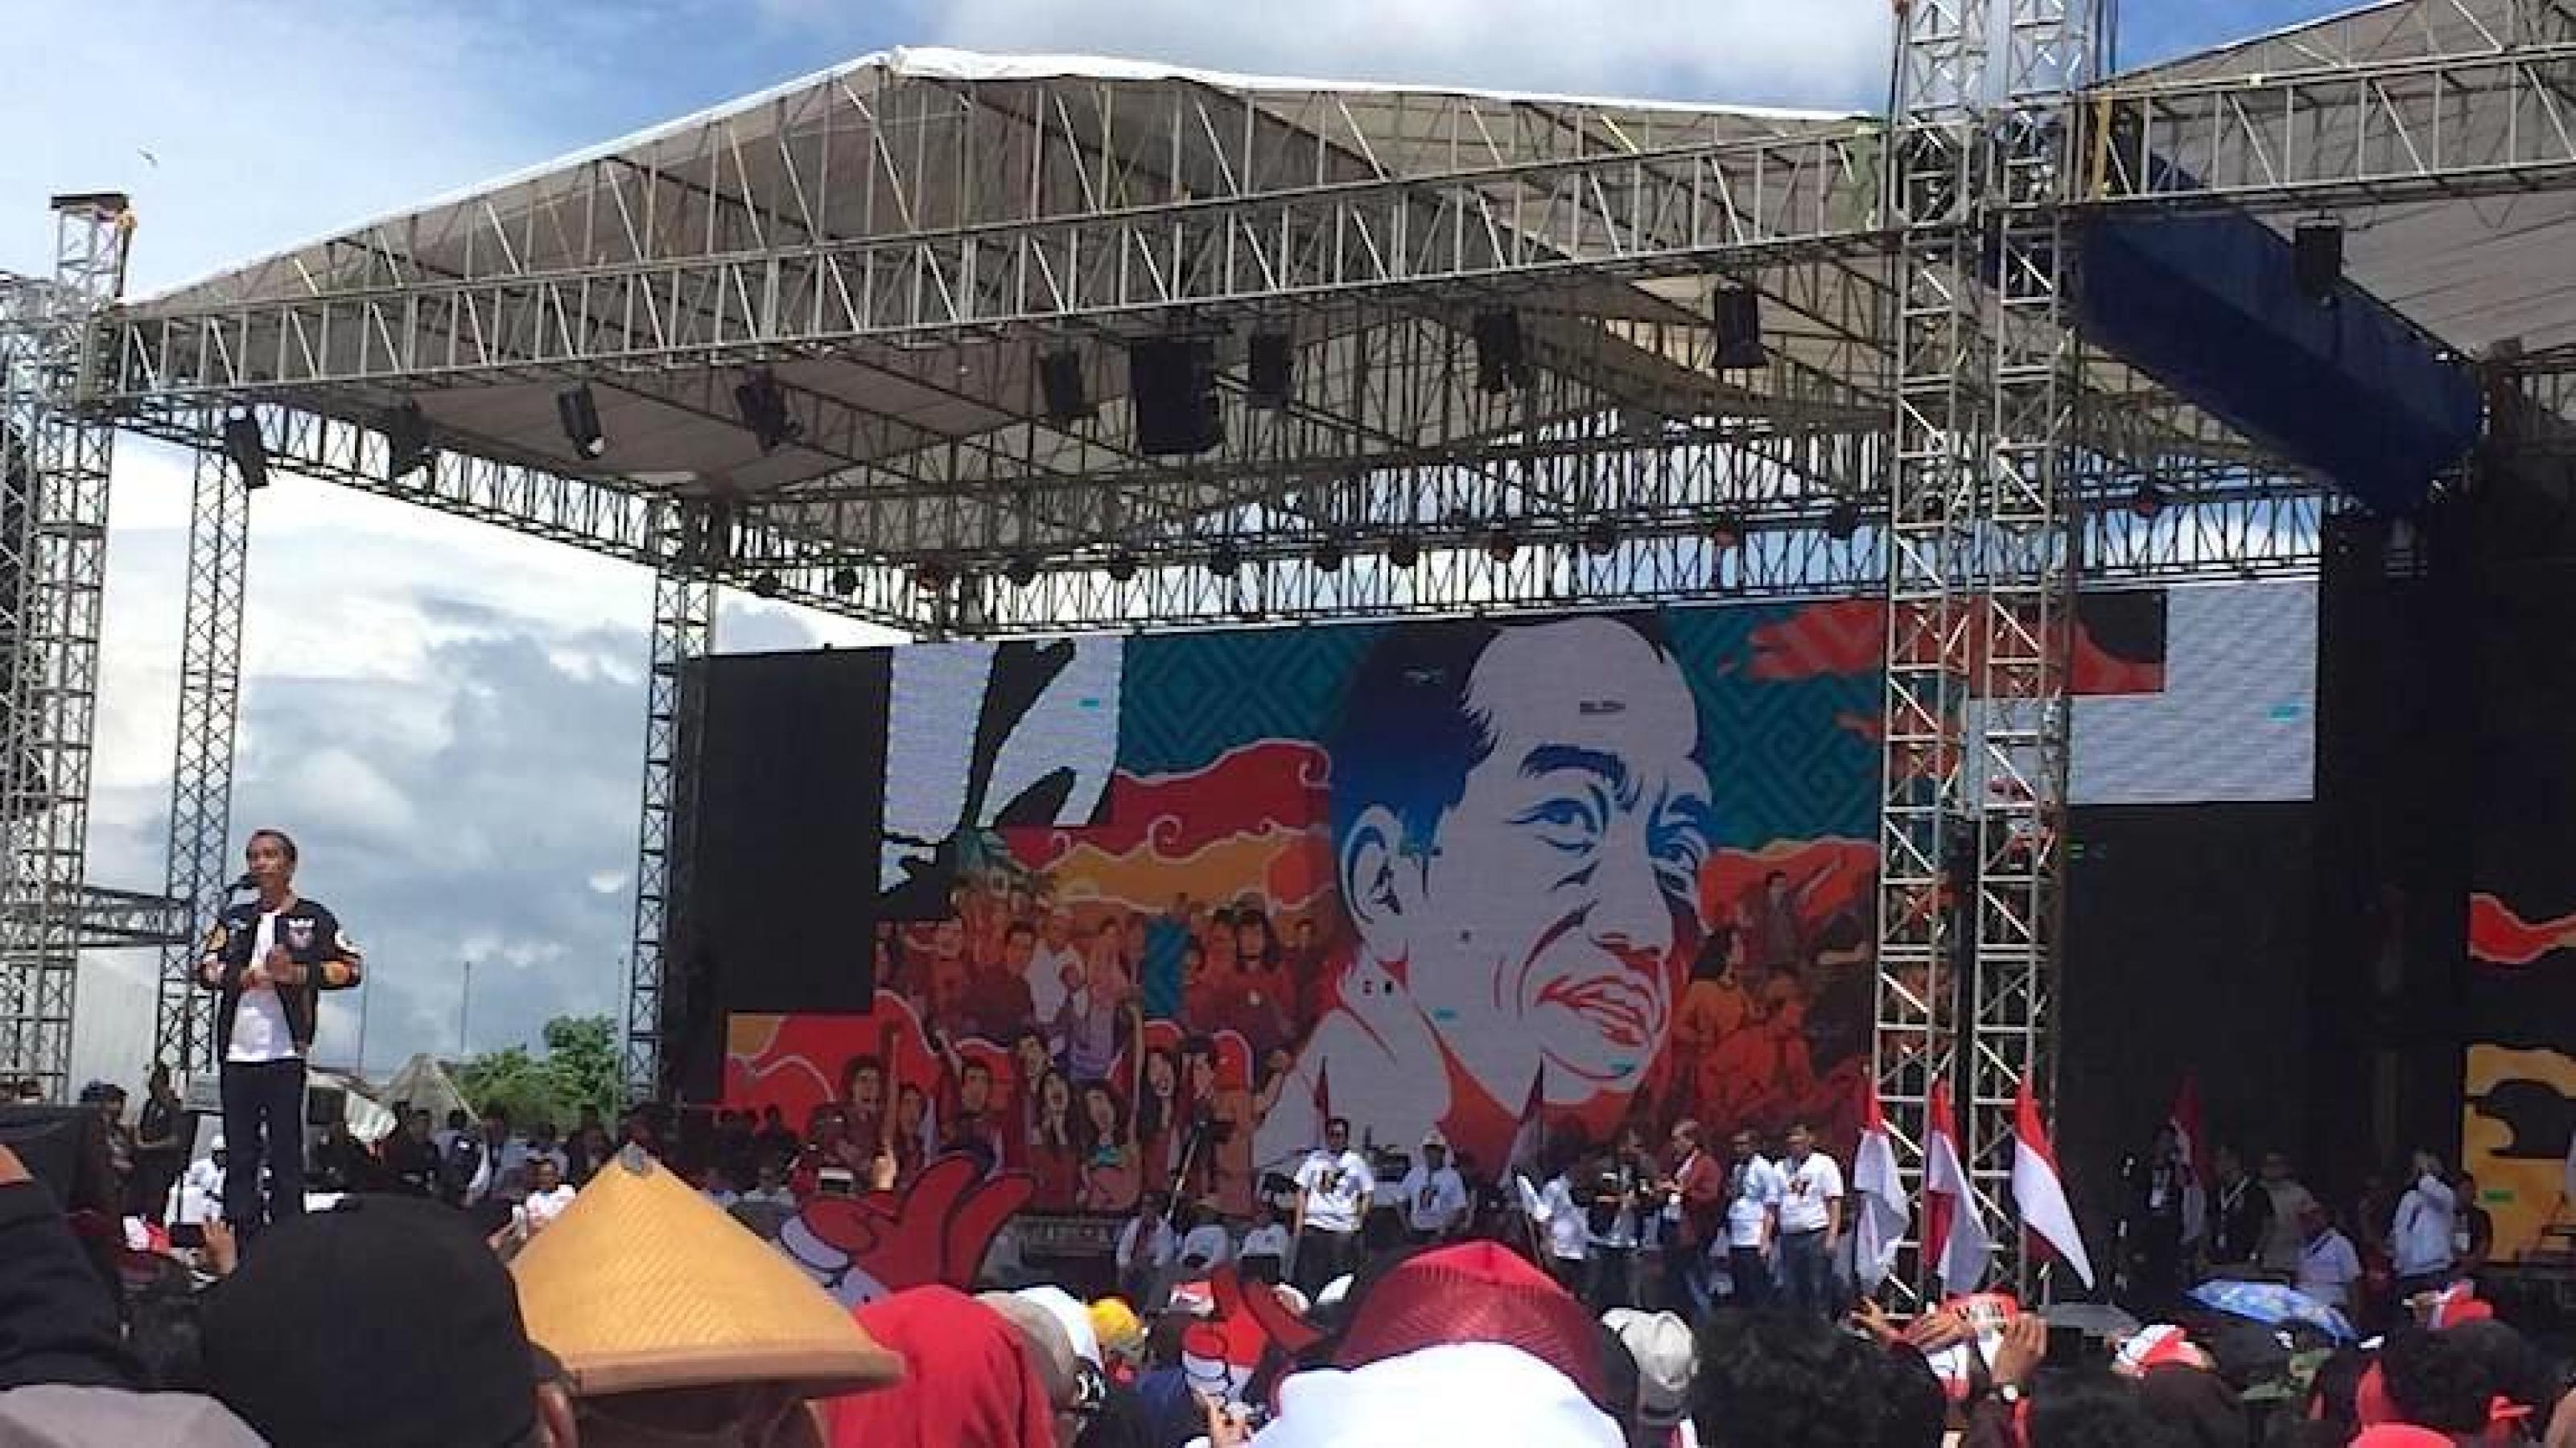 Der indonesische Präsident Joko Widodo steht 2019 bei einer Wahlkampfveranstaltung in Yogyakarta auf einer Bühne, dahinter ist ein riesiges Porträt von ihm zu sehen.